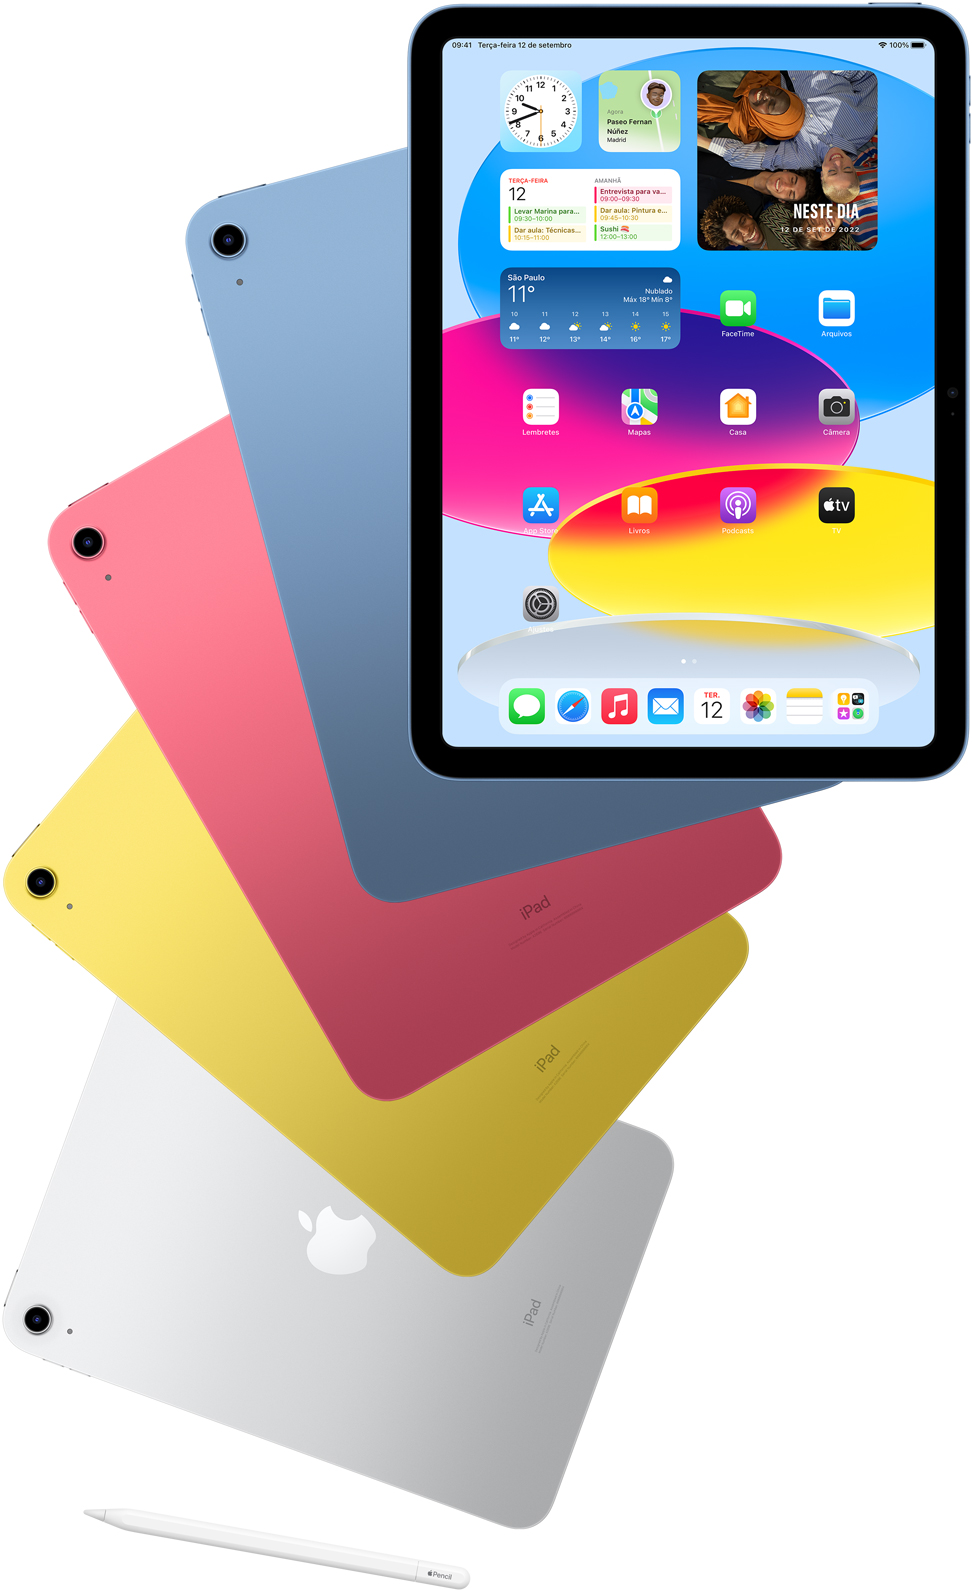 Imagem da parte da frente de um iPad mostrando a Tela de Início e das partes de trás de outras unidades de iPad nas cores azul, rosa, amarelo e prateado. Há um Apple Pencil perto dos modelos de iPad.